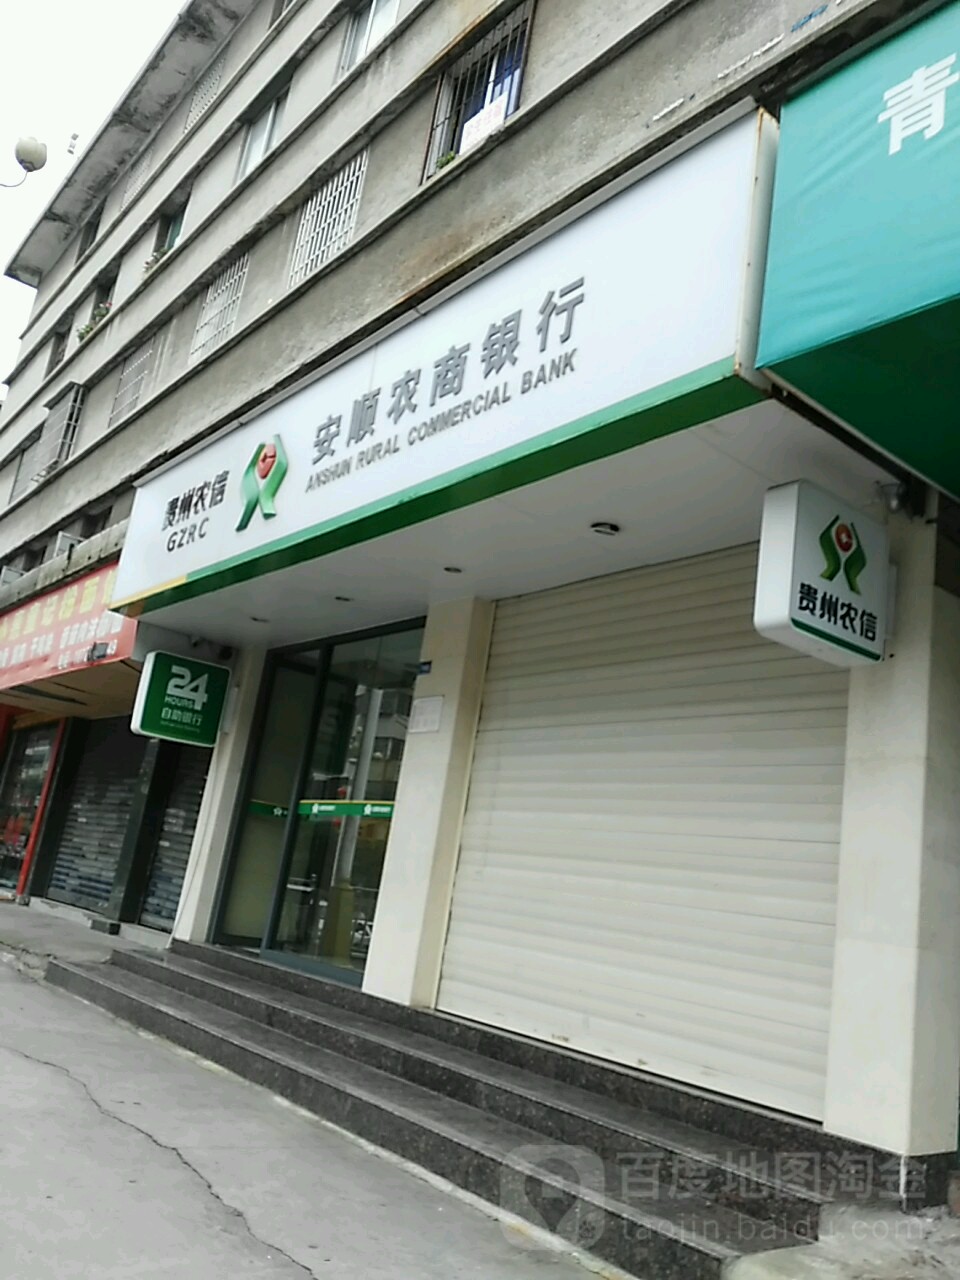 安順農商銀行24小時自助銀行(中華東路店)